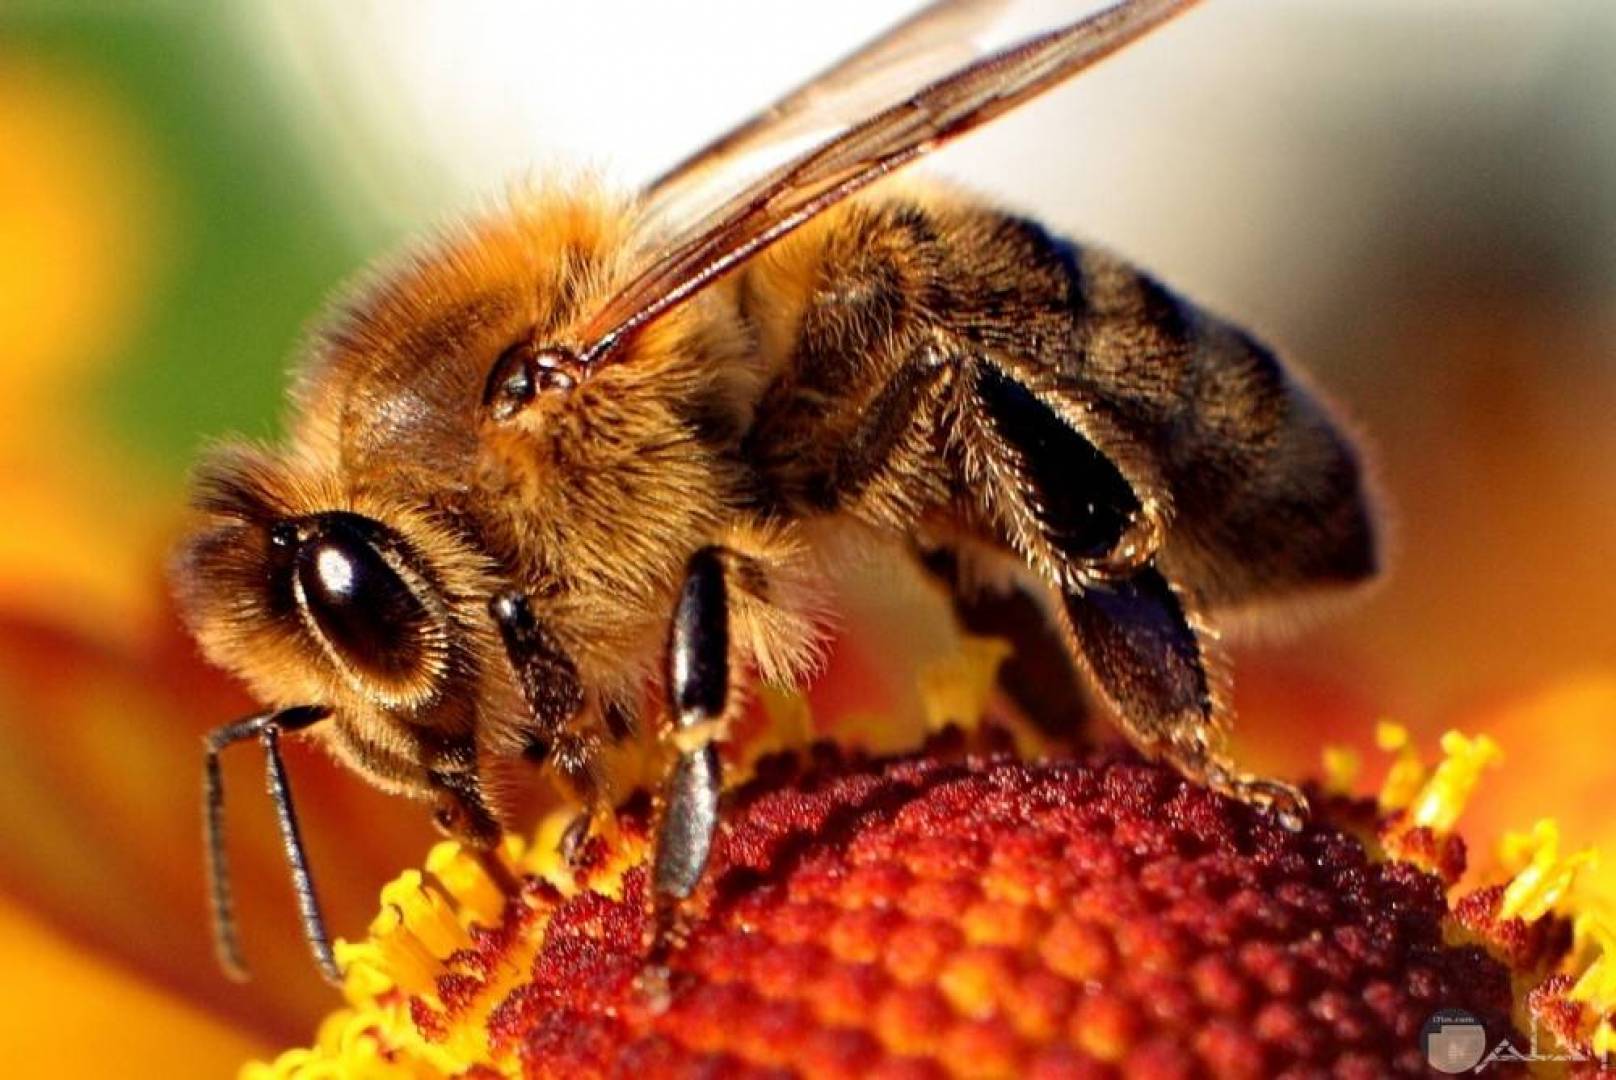 دراسة سلوكيات النحل من خلال تعديل الشفرة الجينية لدماغ النحل وجعله يتوهج